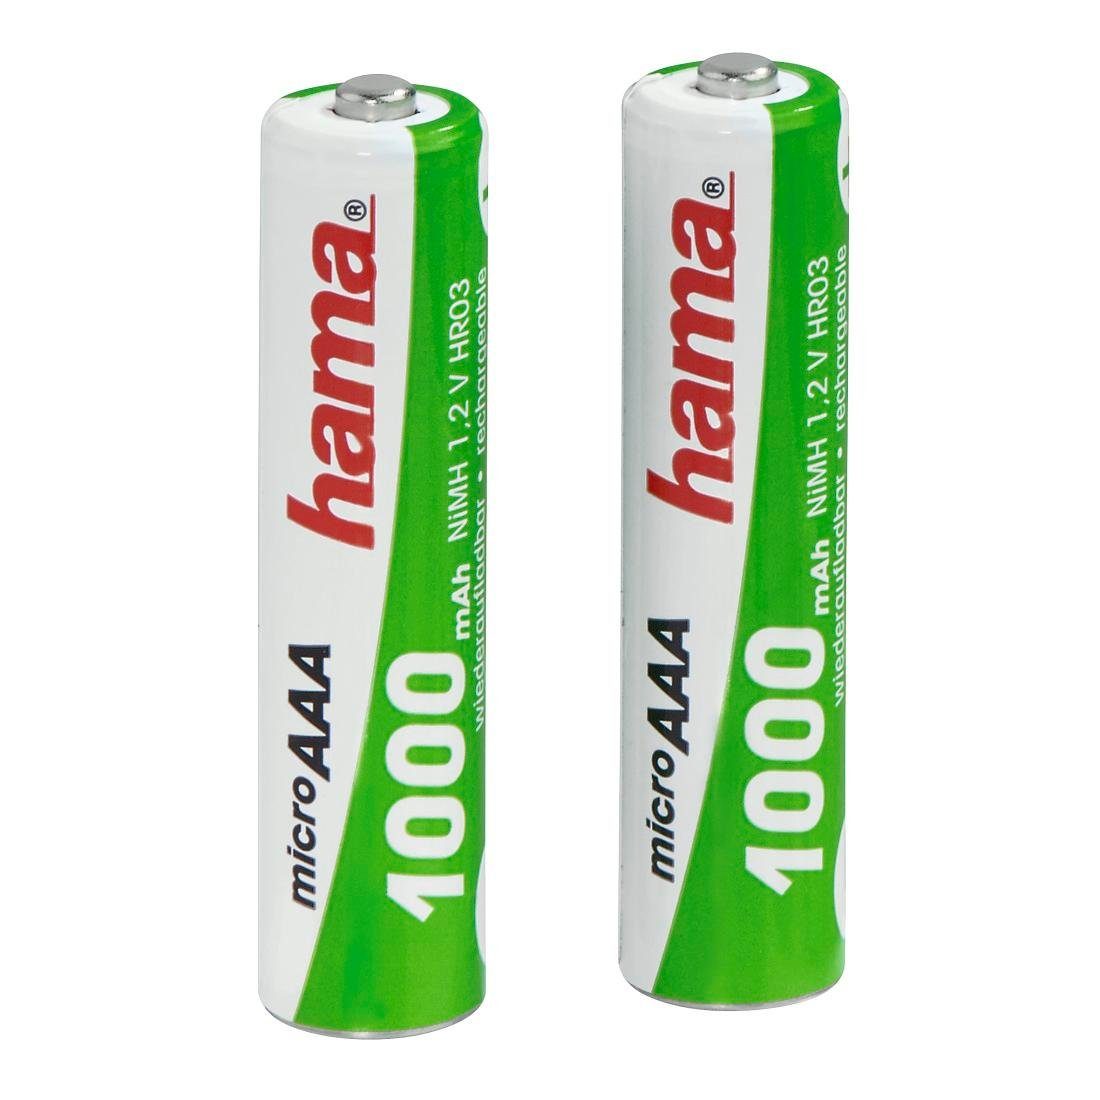 Hama 2er Pack Wiederaufladbare Batterien für schnurlose Telefone, AAA NiMH  Akkupacks (2 St)